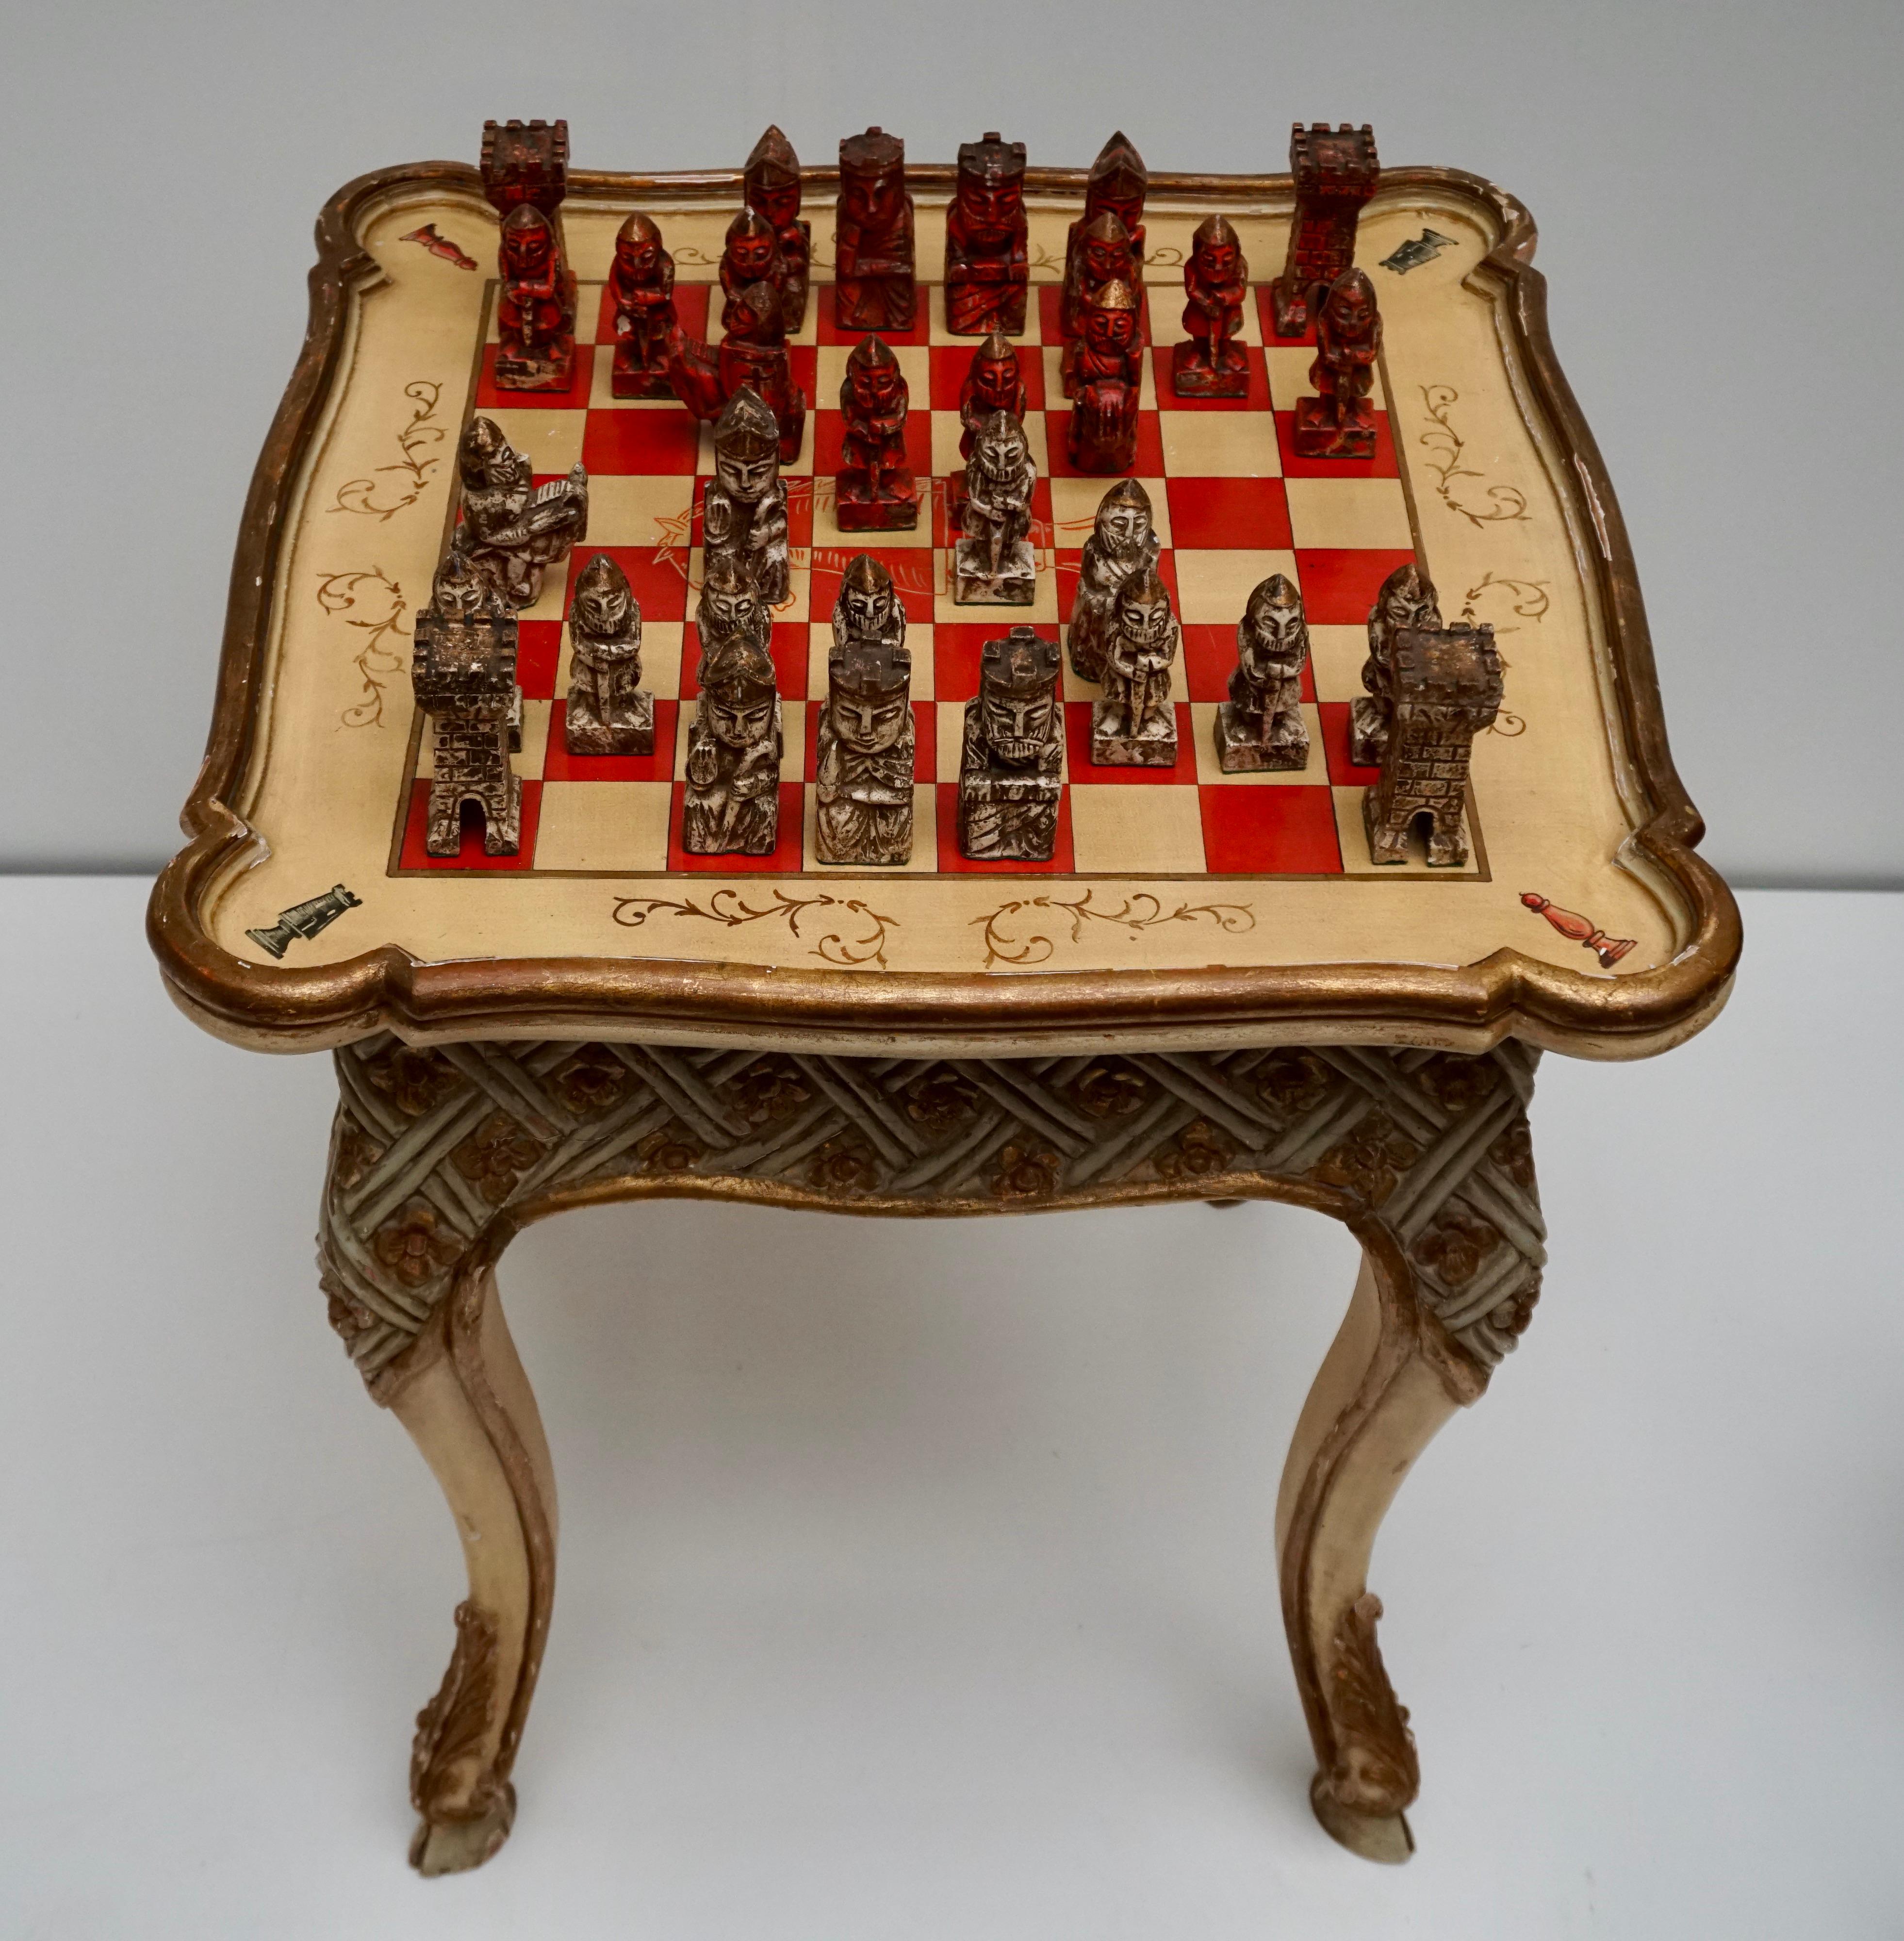 Seltenes italienisches Schachspiel aus dem frühen 20. Jahrhundert aus geschnitztem, lackiertem, vergoldetem und handbemaltem Holz mit sehr schönen floralen Verzierungen. 

Maße: Höhe 79 cm.
Breite 69 cm.
 